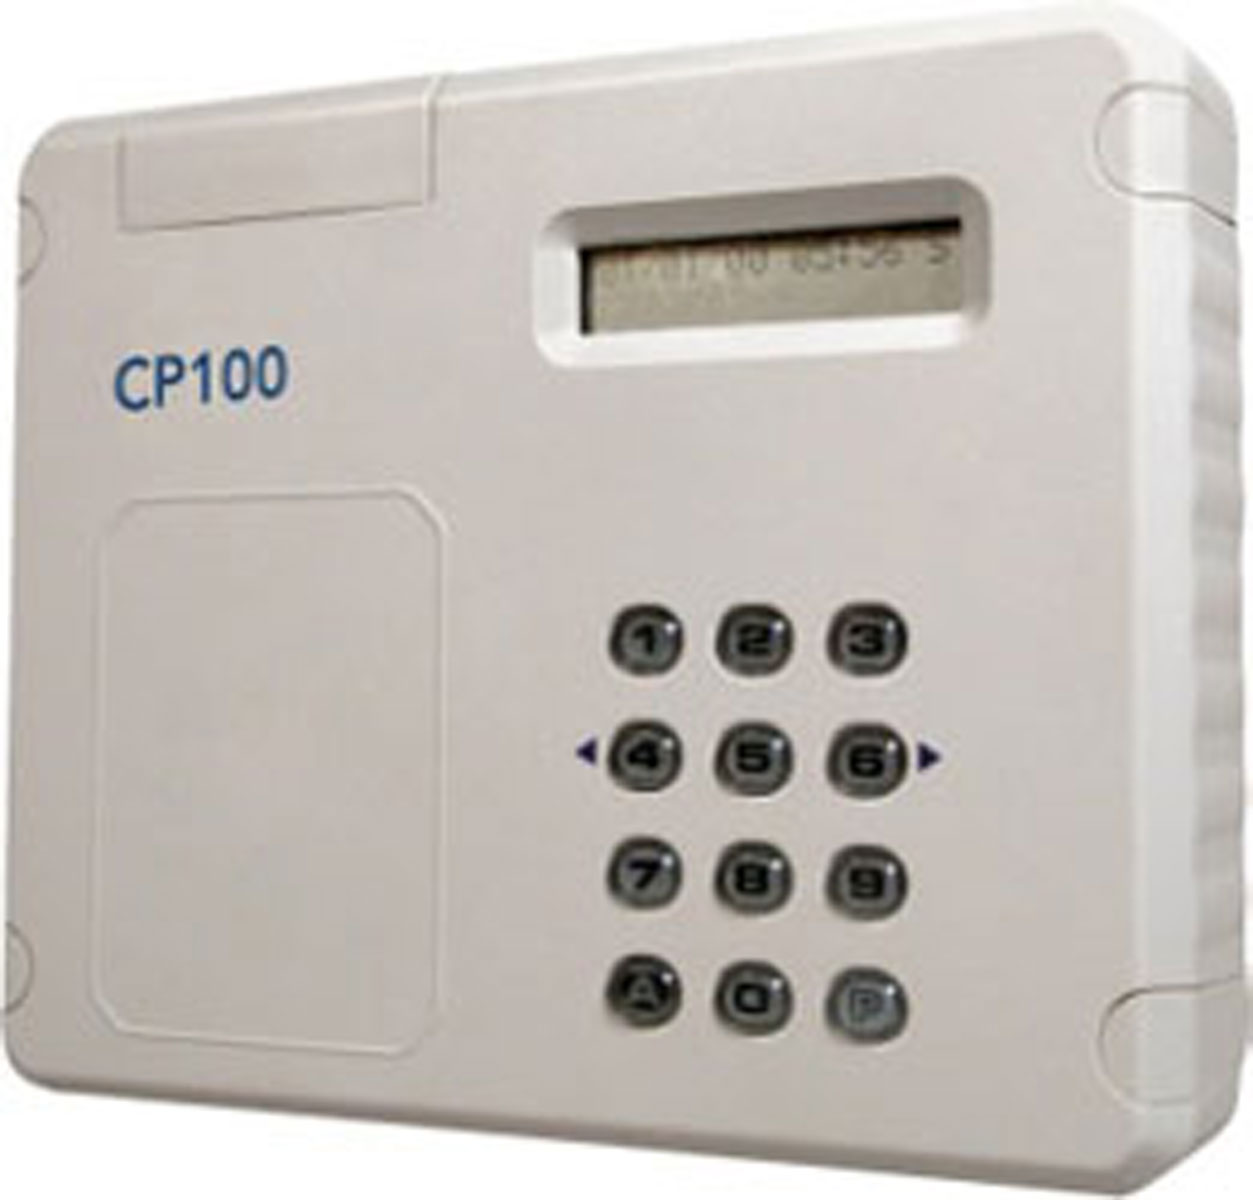 Controle d'acces par badge transpondeur selecteur à badge 12-24 Volts